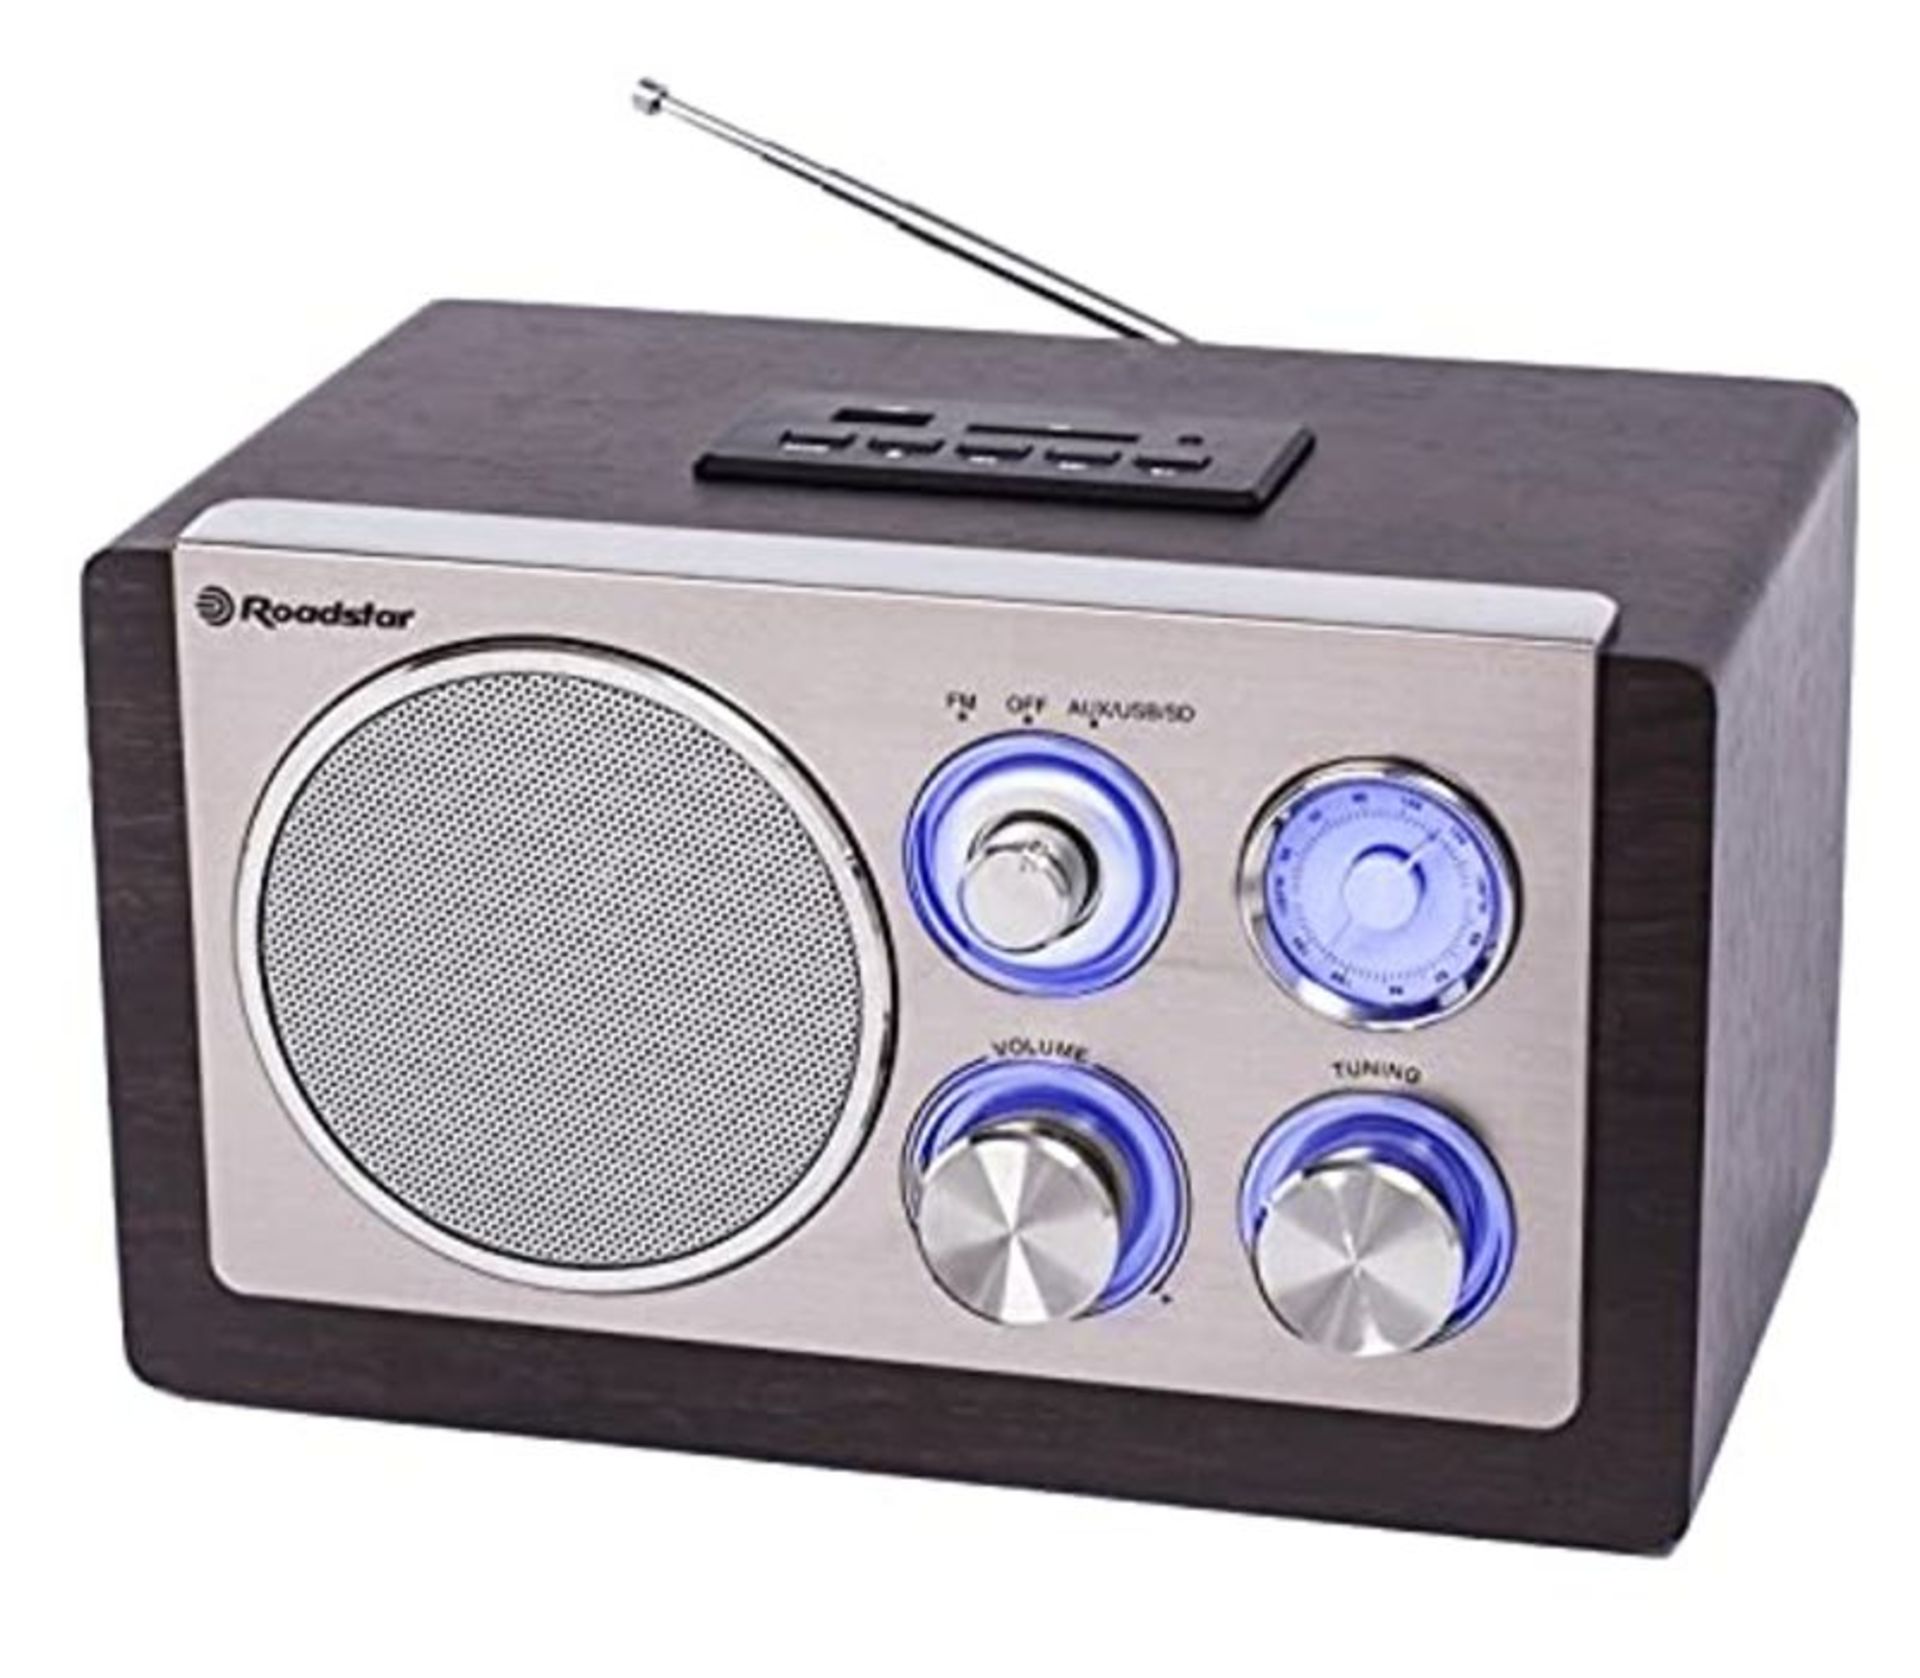 Roadstar HRA-1345 Retro-Radio mit UKW und MW Tuner (USB, SD-Kartenleser, AUX-In, Teles